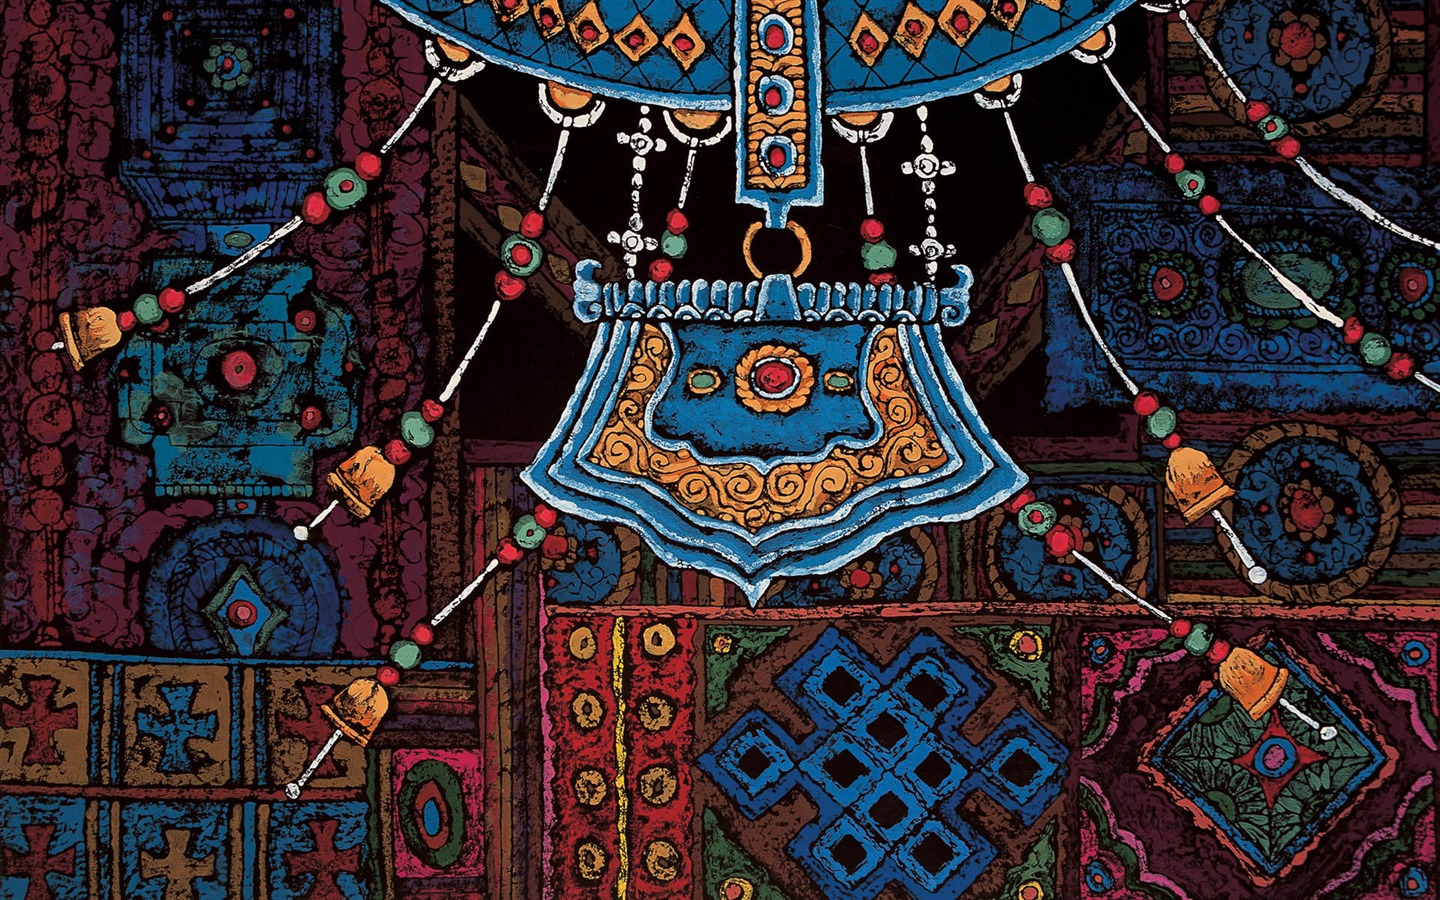 Cheung Pakistan print tibetischen Wallpaper (1) #3 - 1440x900